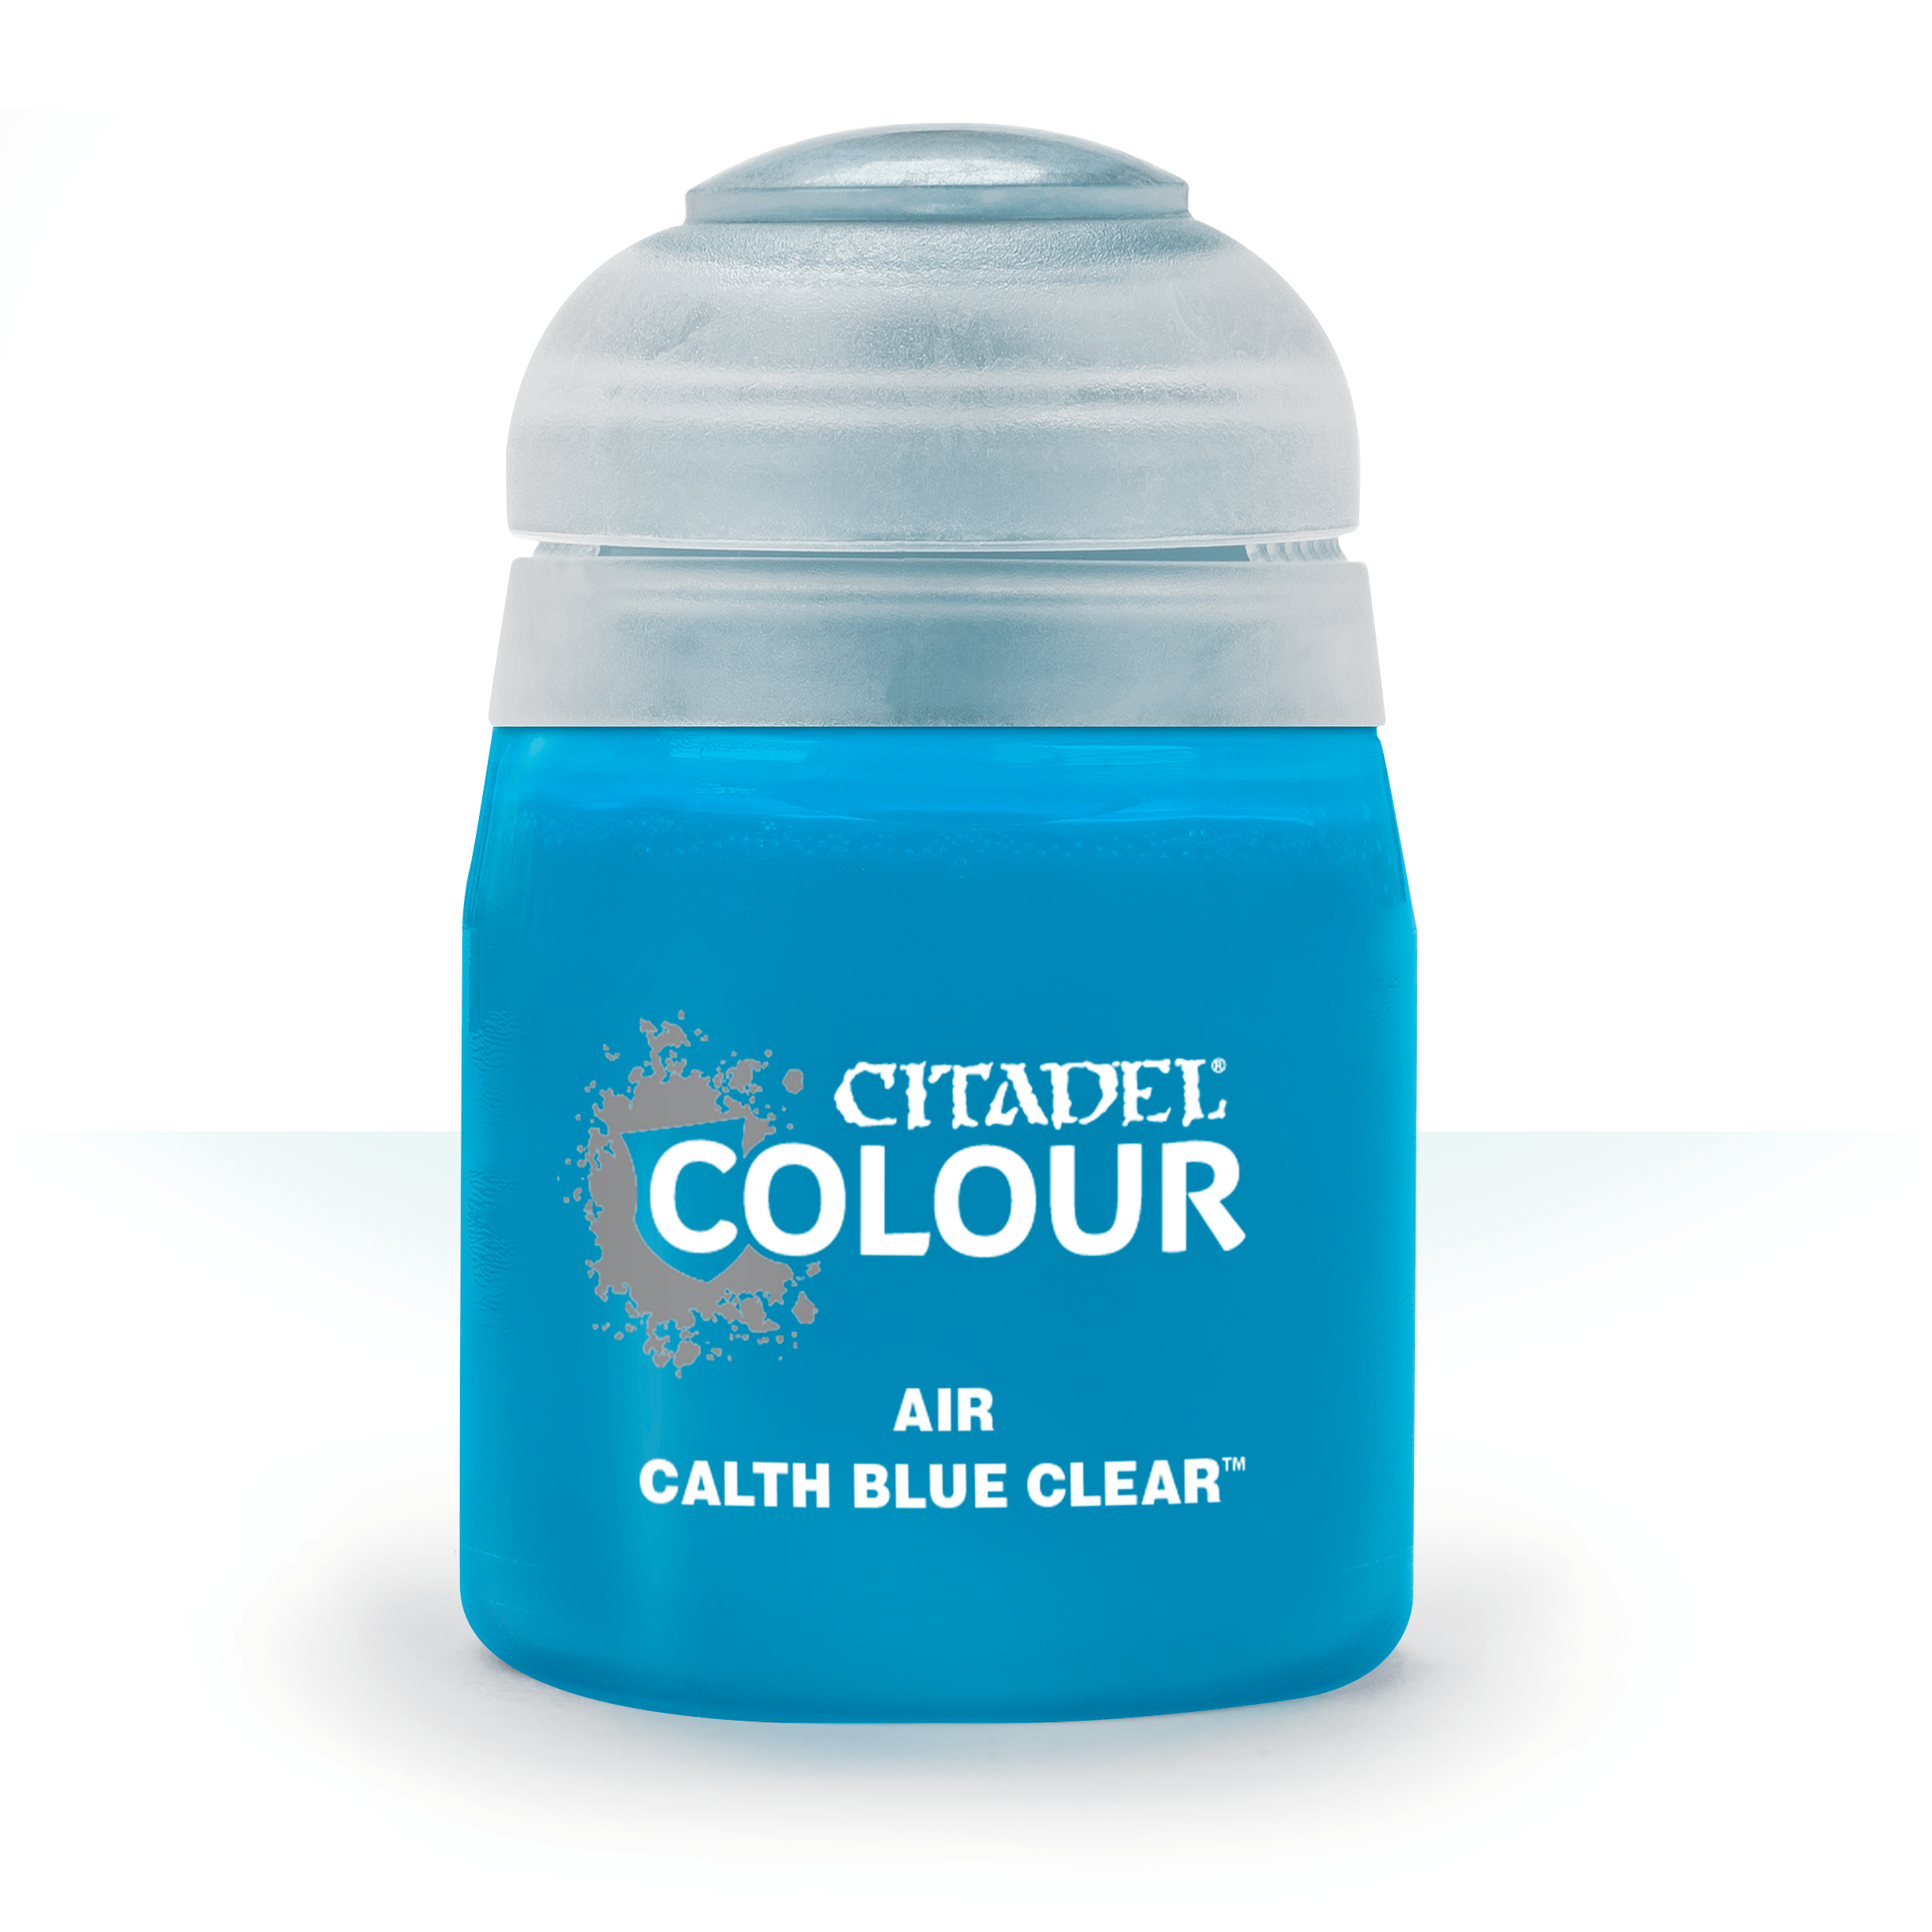 Calth Blue Clear - Citadel Air Colour